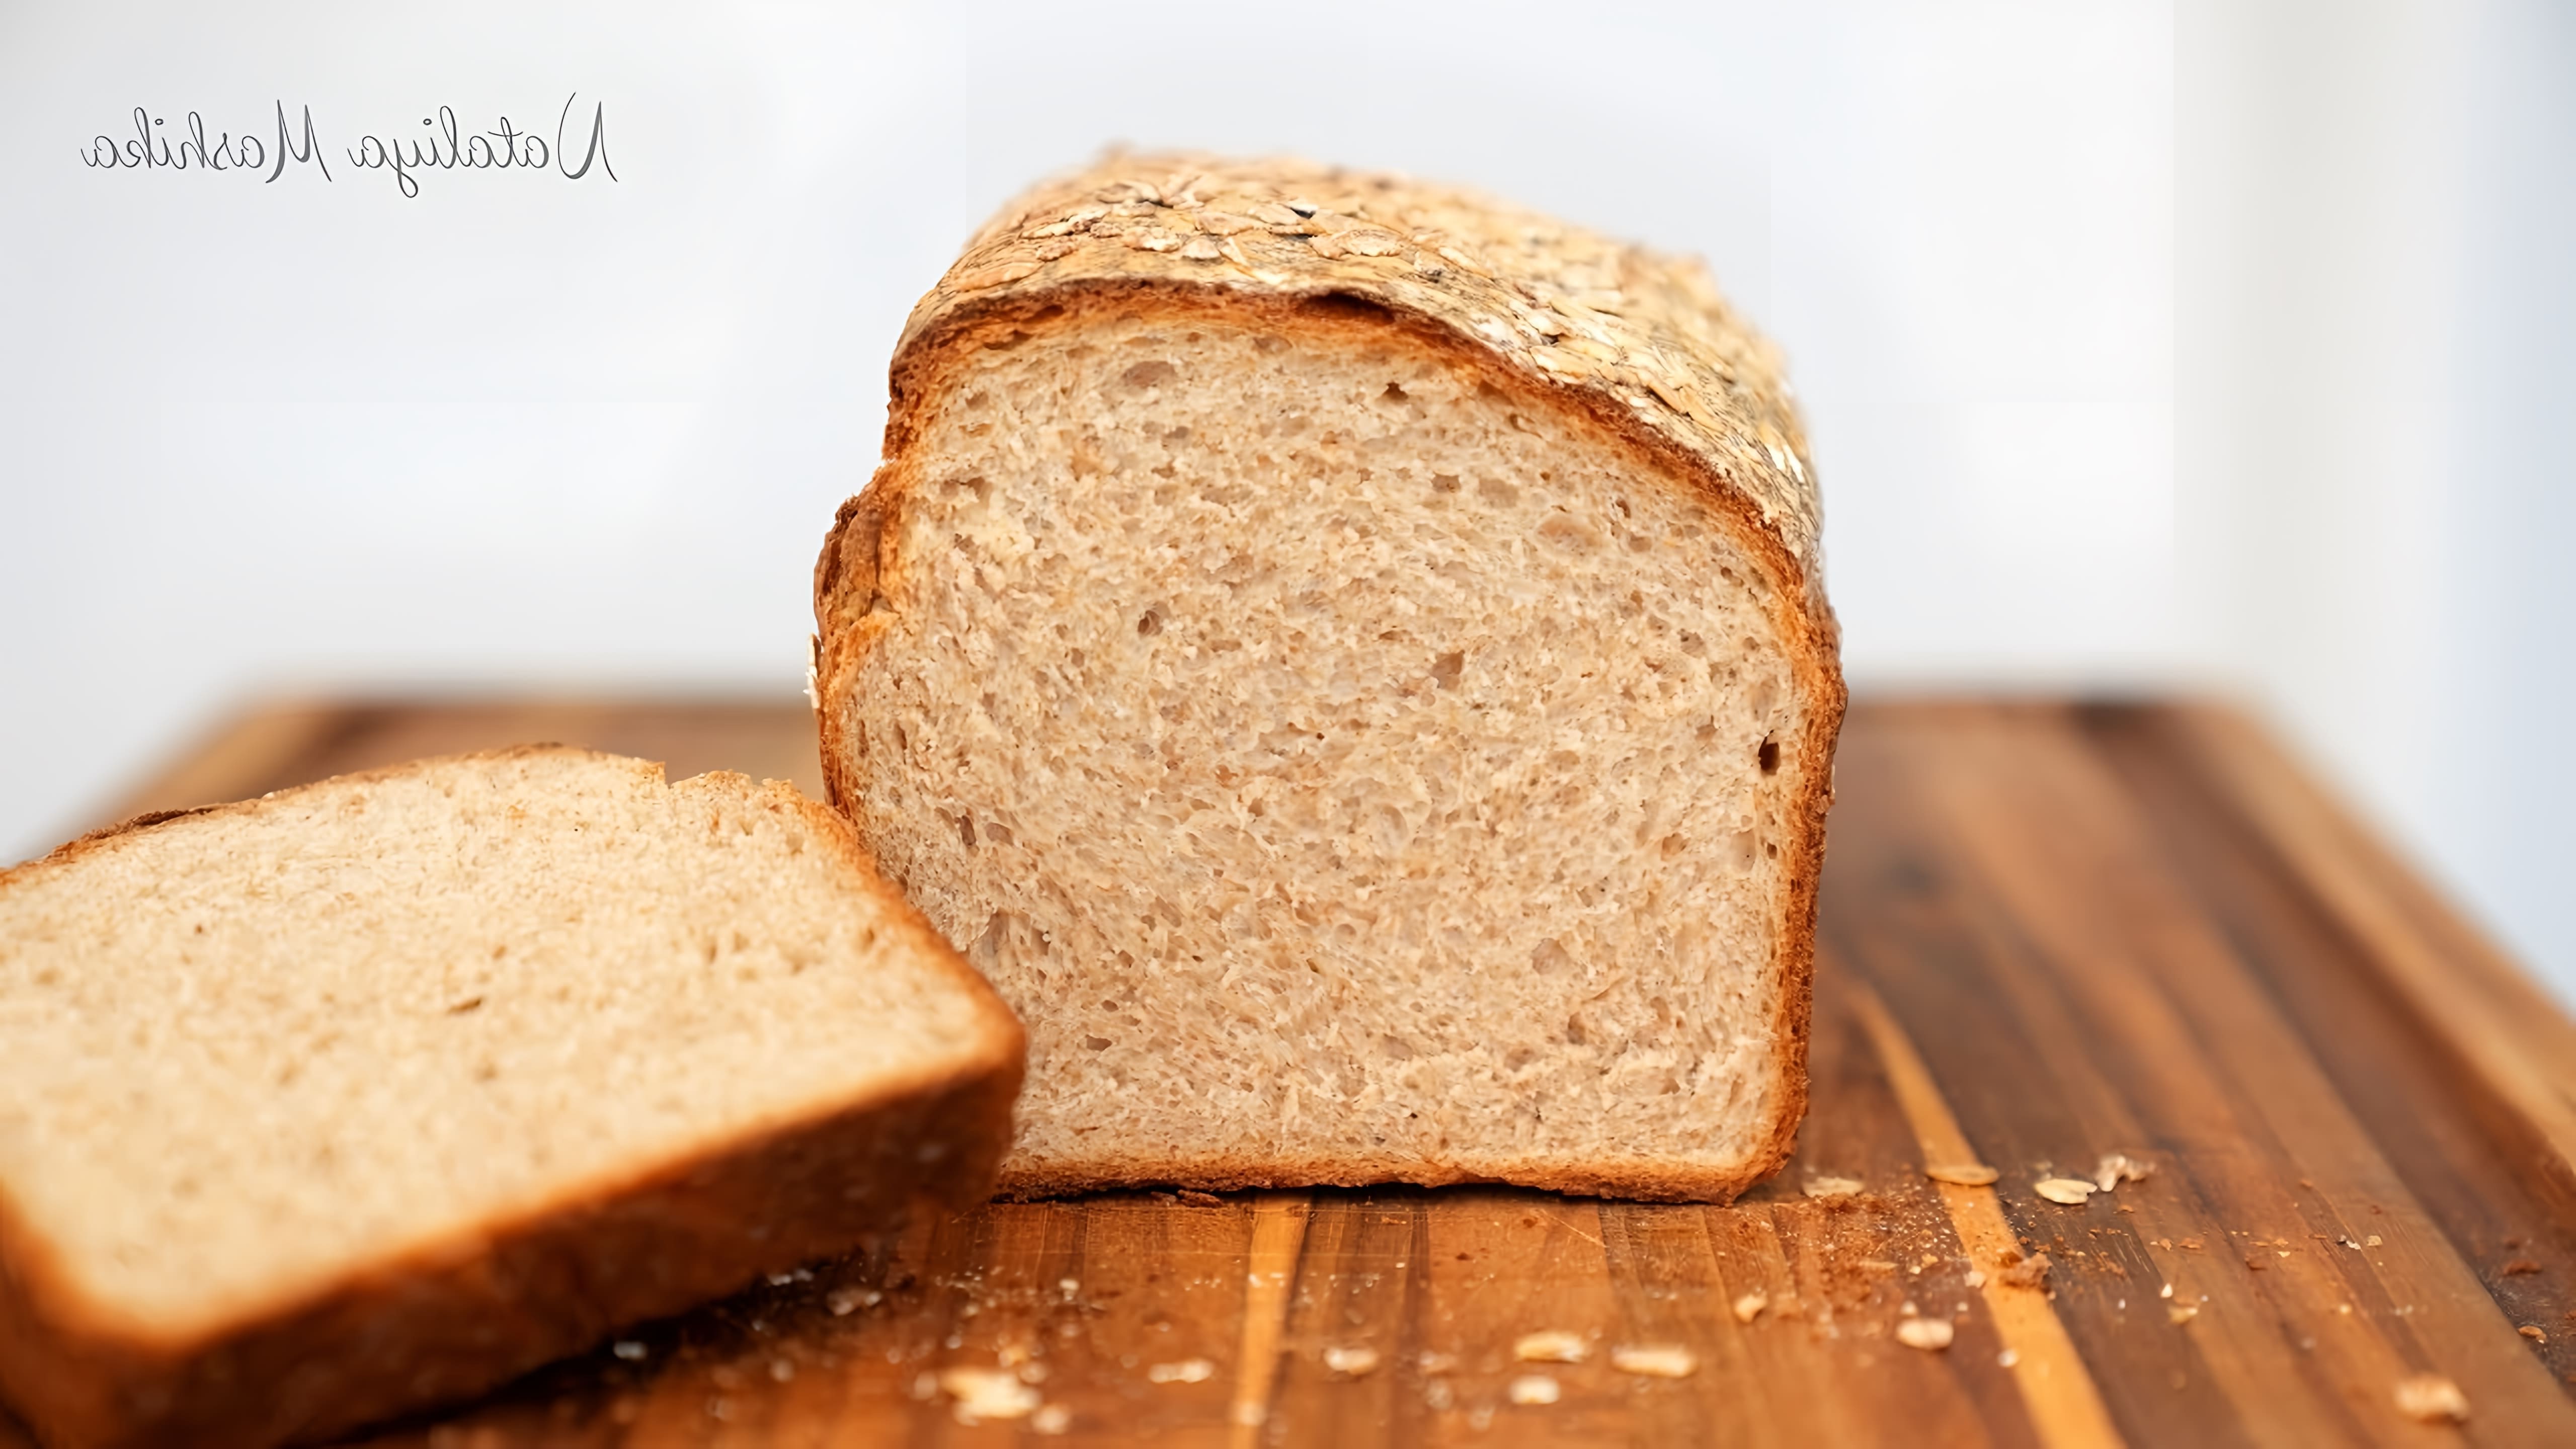 В этом видео-ролике будет показан процесс приготовления пшенично-ржаного хлеба, который является вкусным и простым в приготовлении